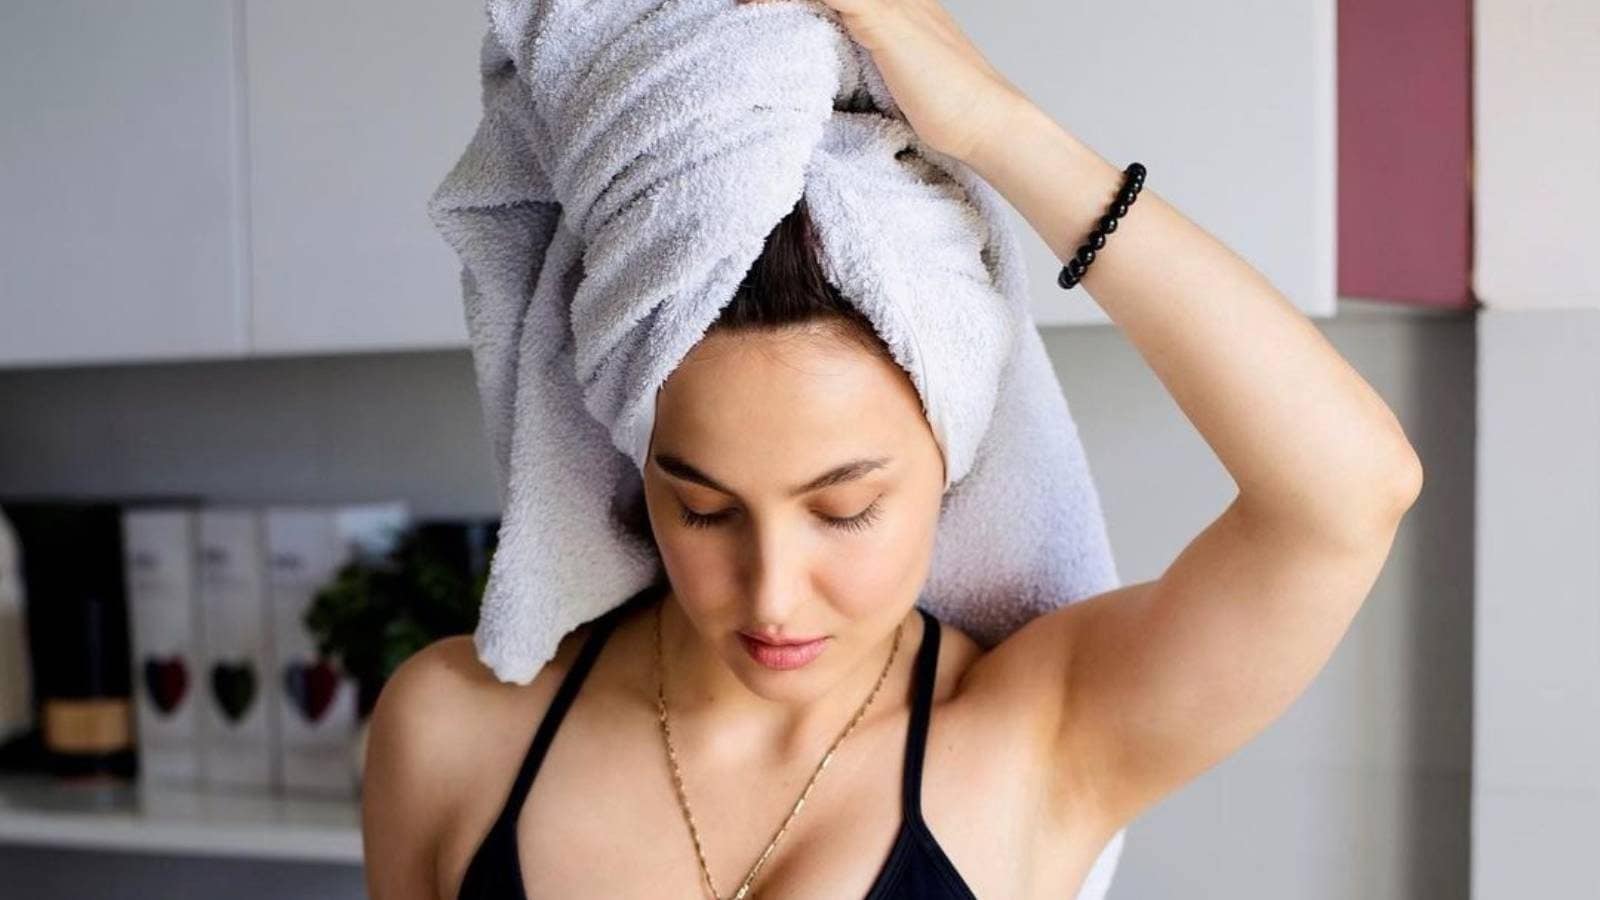 Call myself. Девушка с полотенцем на голове. Женщина в полотенце пьется. Девушка держит полотенце. Селфи с полотенцем на голове.